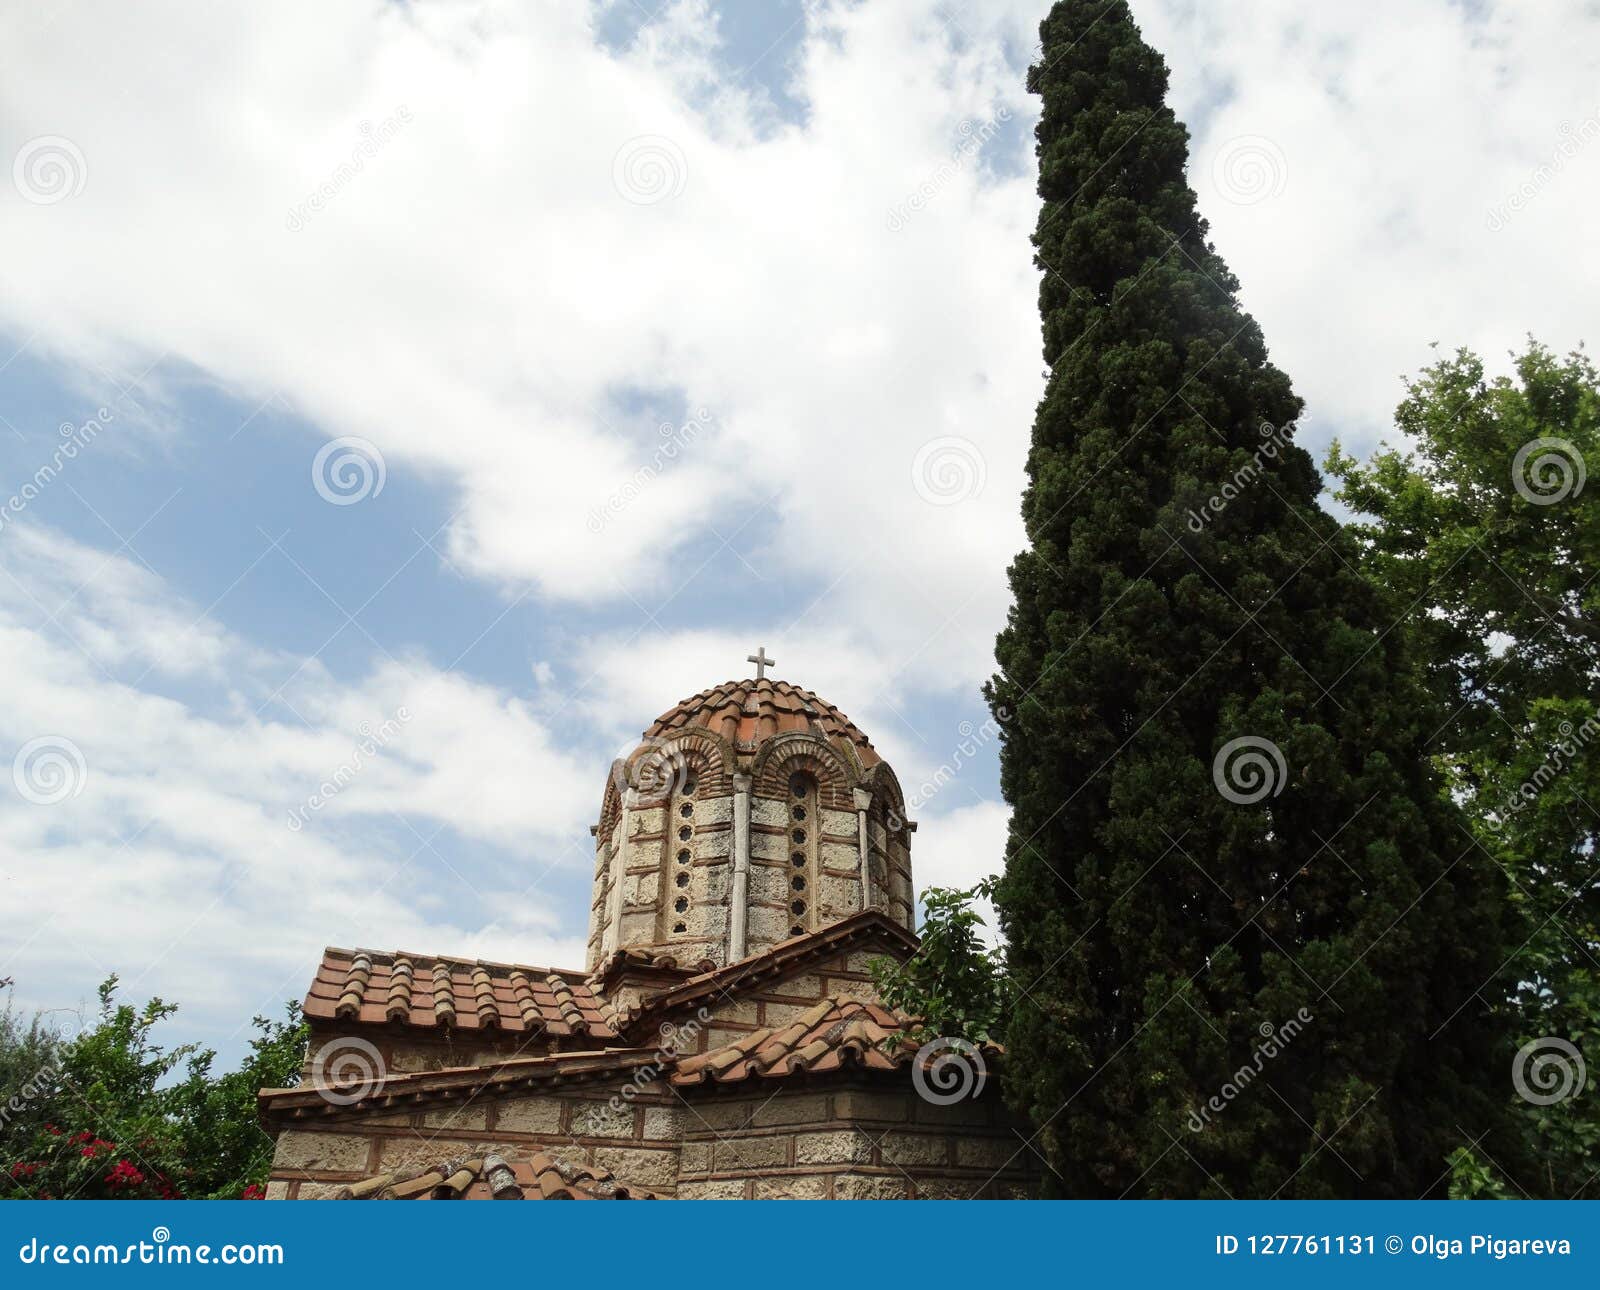 Steinhaube der griechisch-orthodoxen Kirche. Griechisch-orthodoxe Kirche, errichtet in der byzantinischen Art des alten Steins mit einem mit Ziegeln gedeckten Dach, kleine runde Fenster, eine Steinhaube, die mit einem vier-spitzen Kreuz gekrönt wird